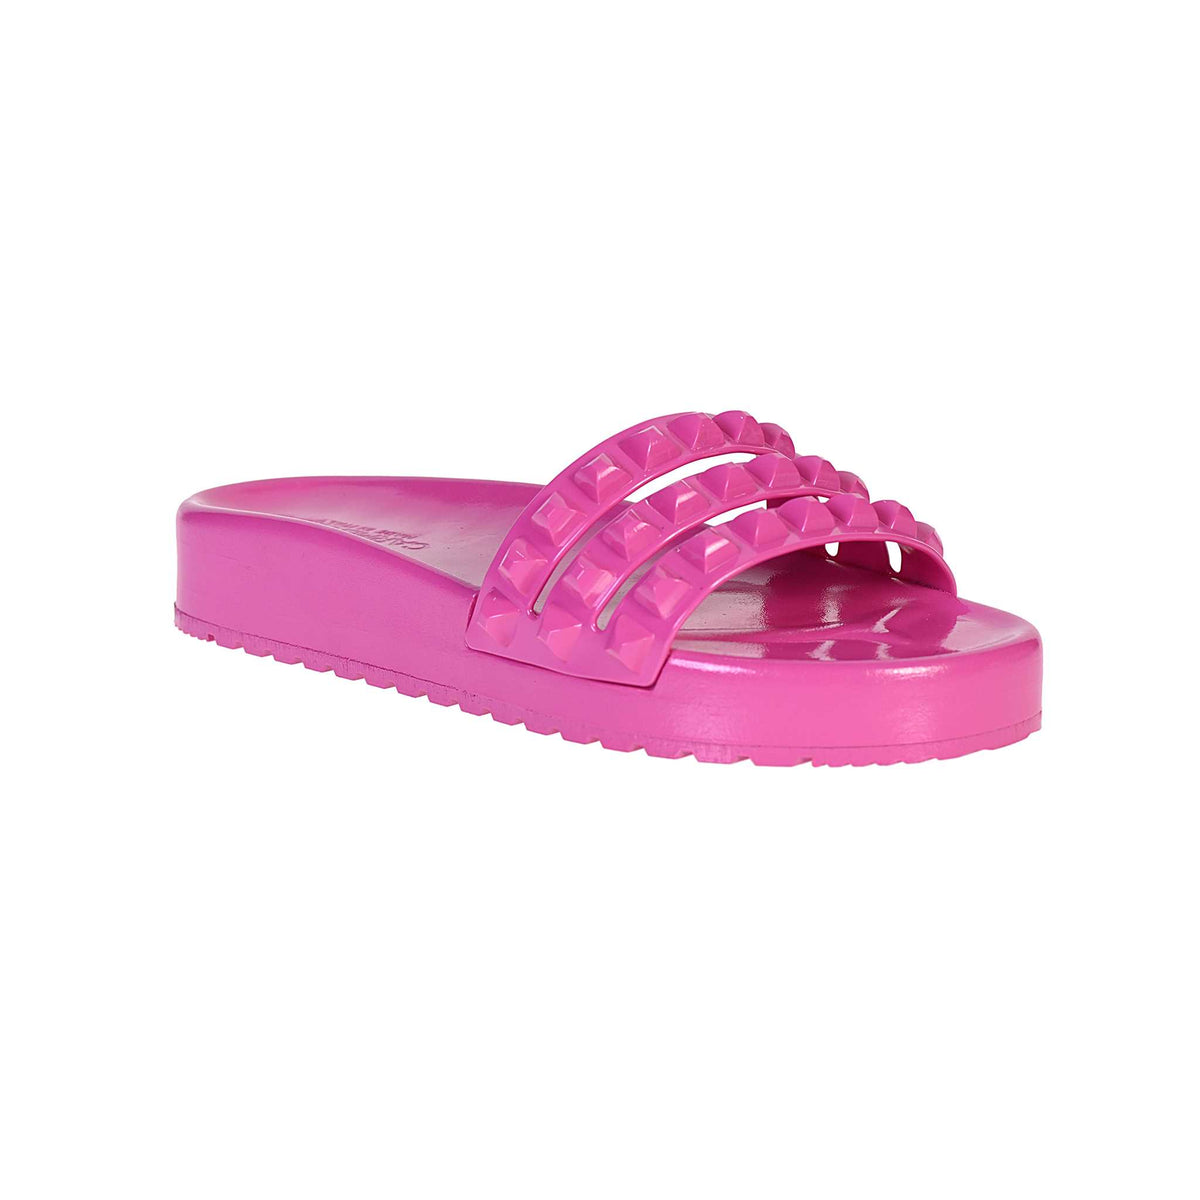 ultra shiny beach slide sandals for women, 3 strap platform slippers from carmen sol